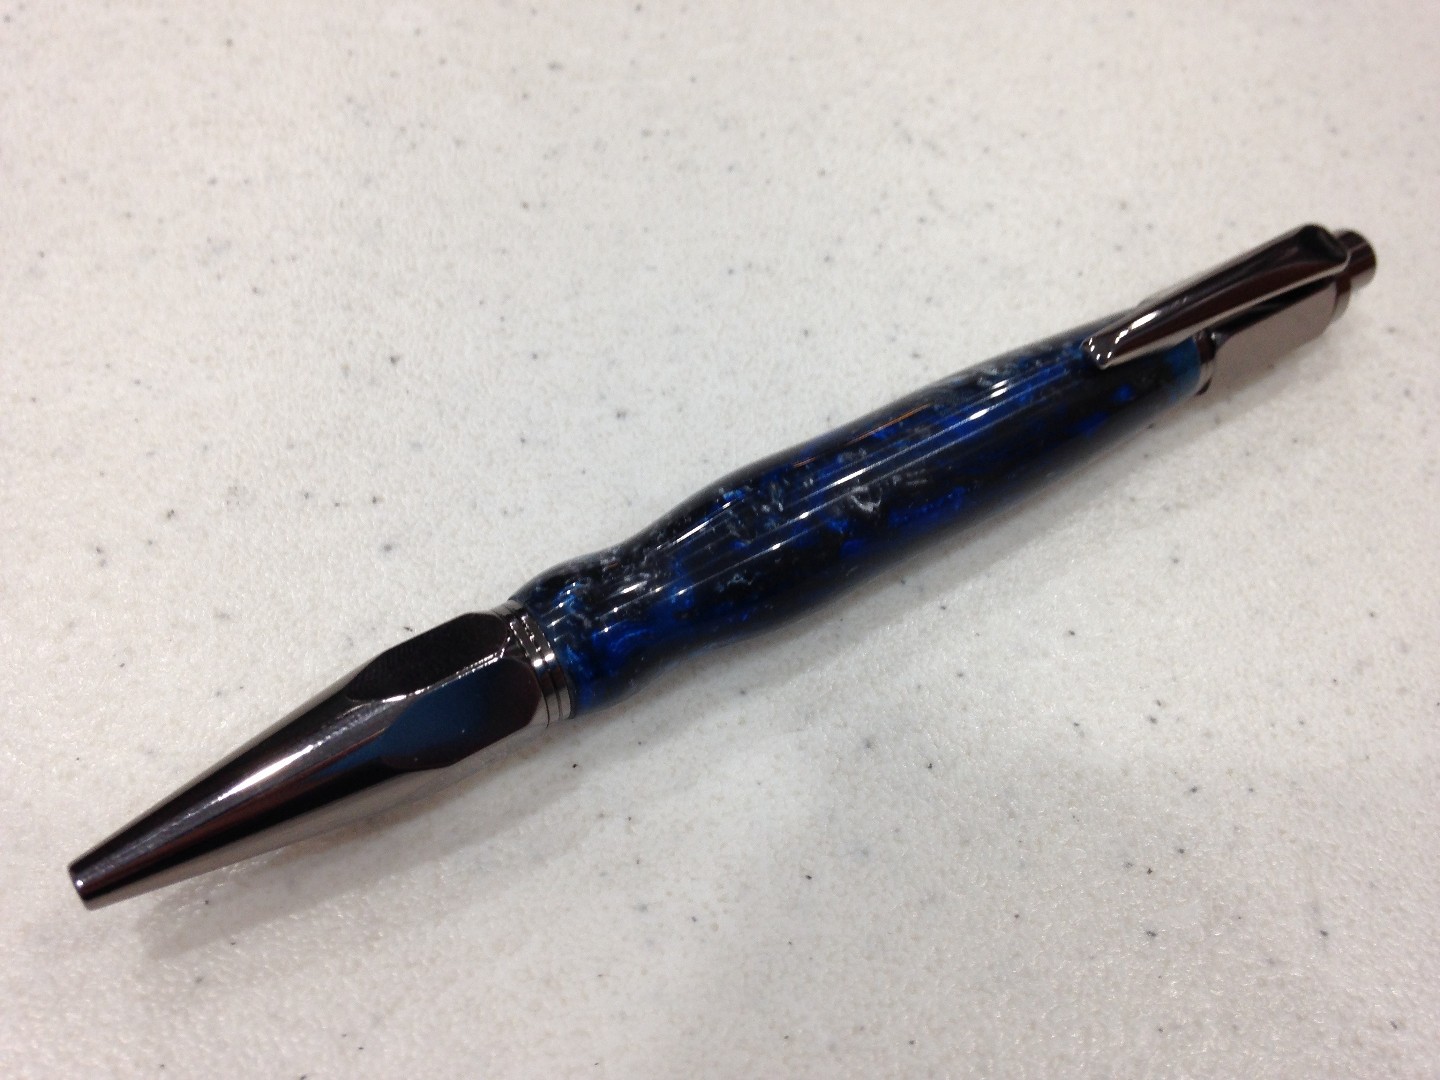 Pen #6 - Vertex Click Pen